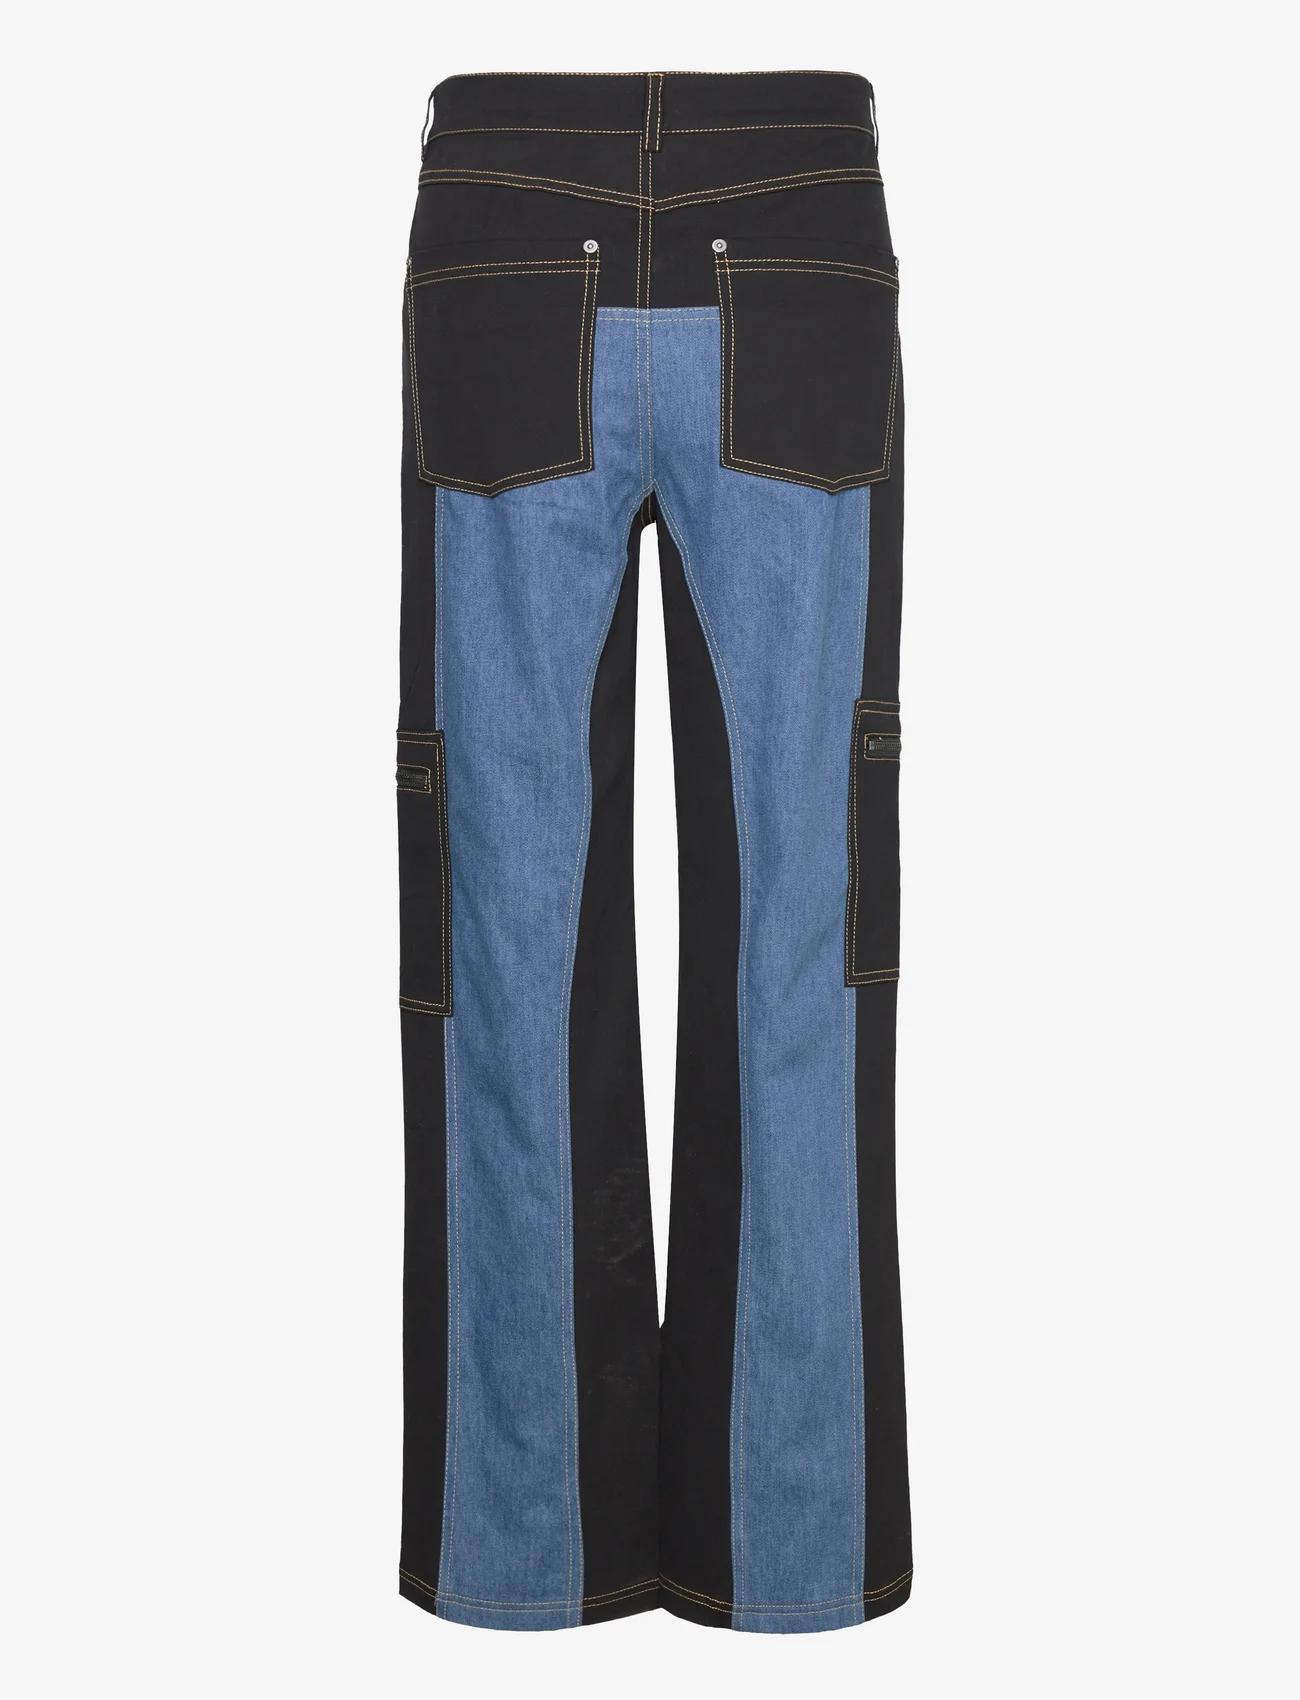 Sofie Schnoor - Trousers - vide jeans - black - 1